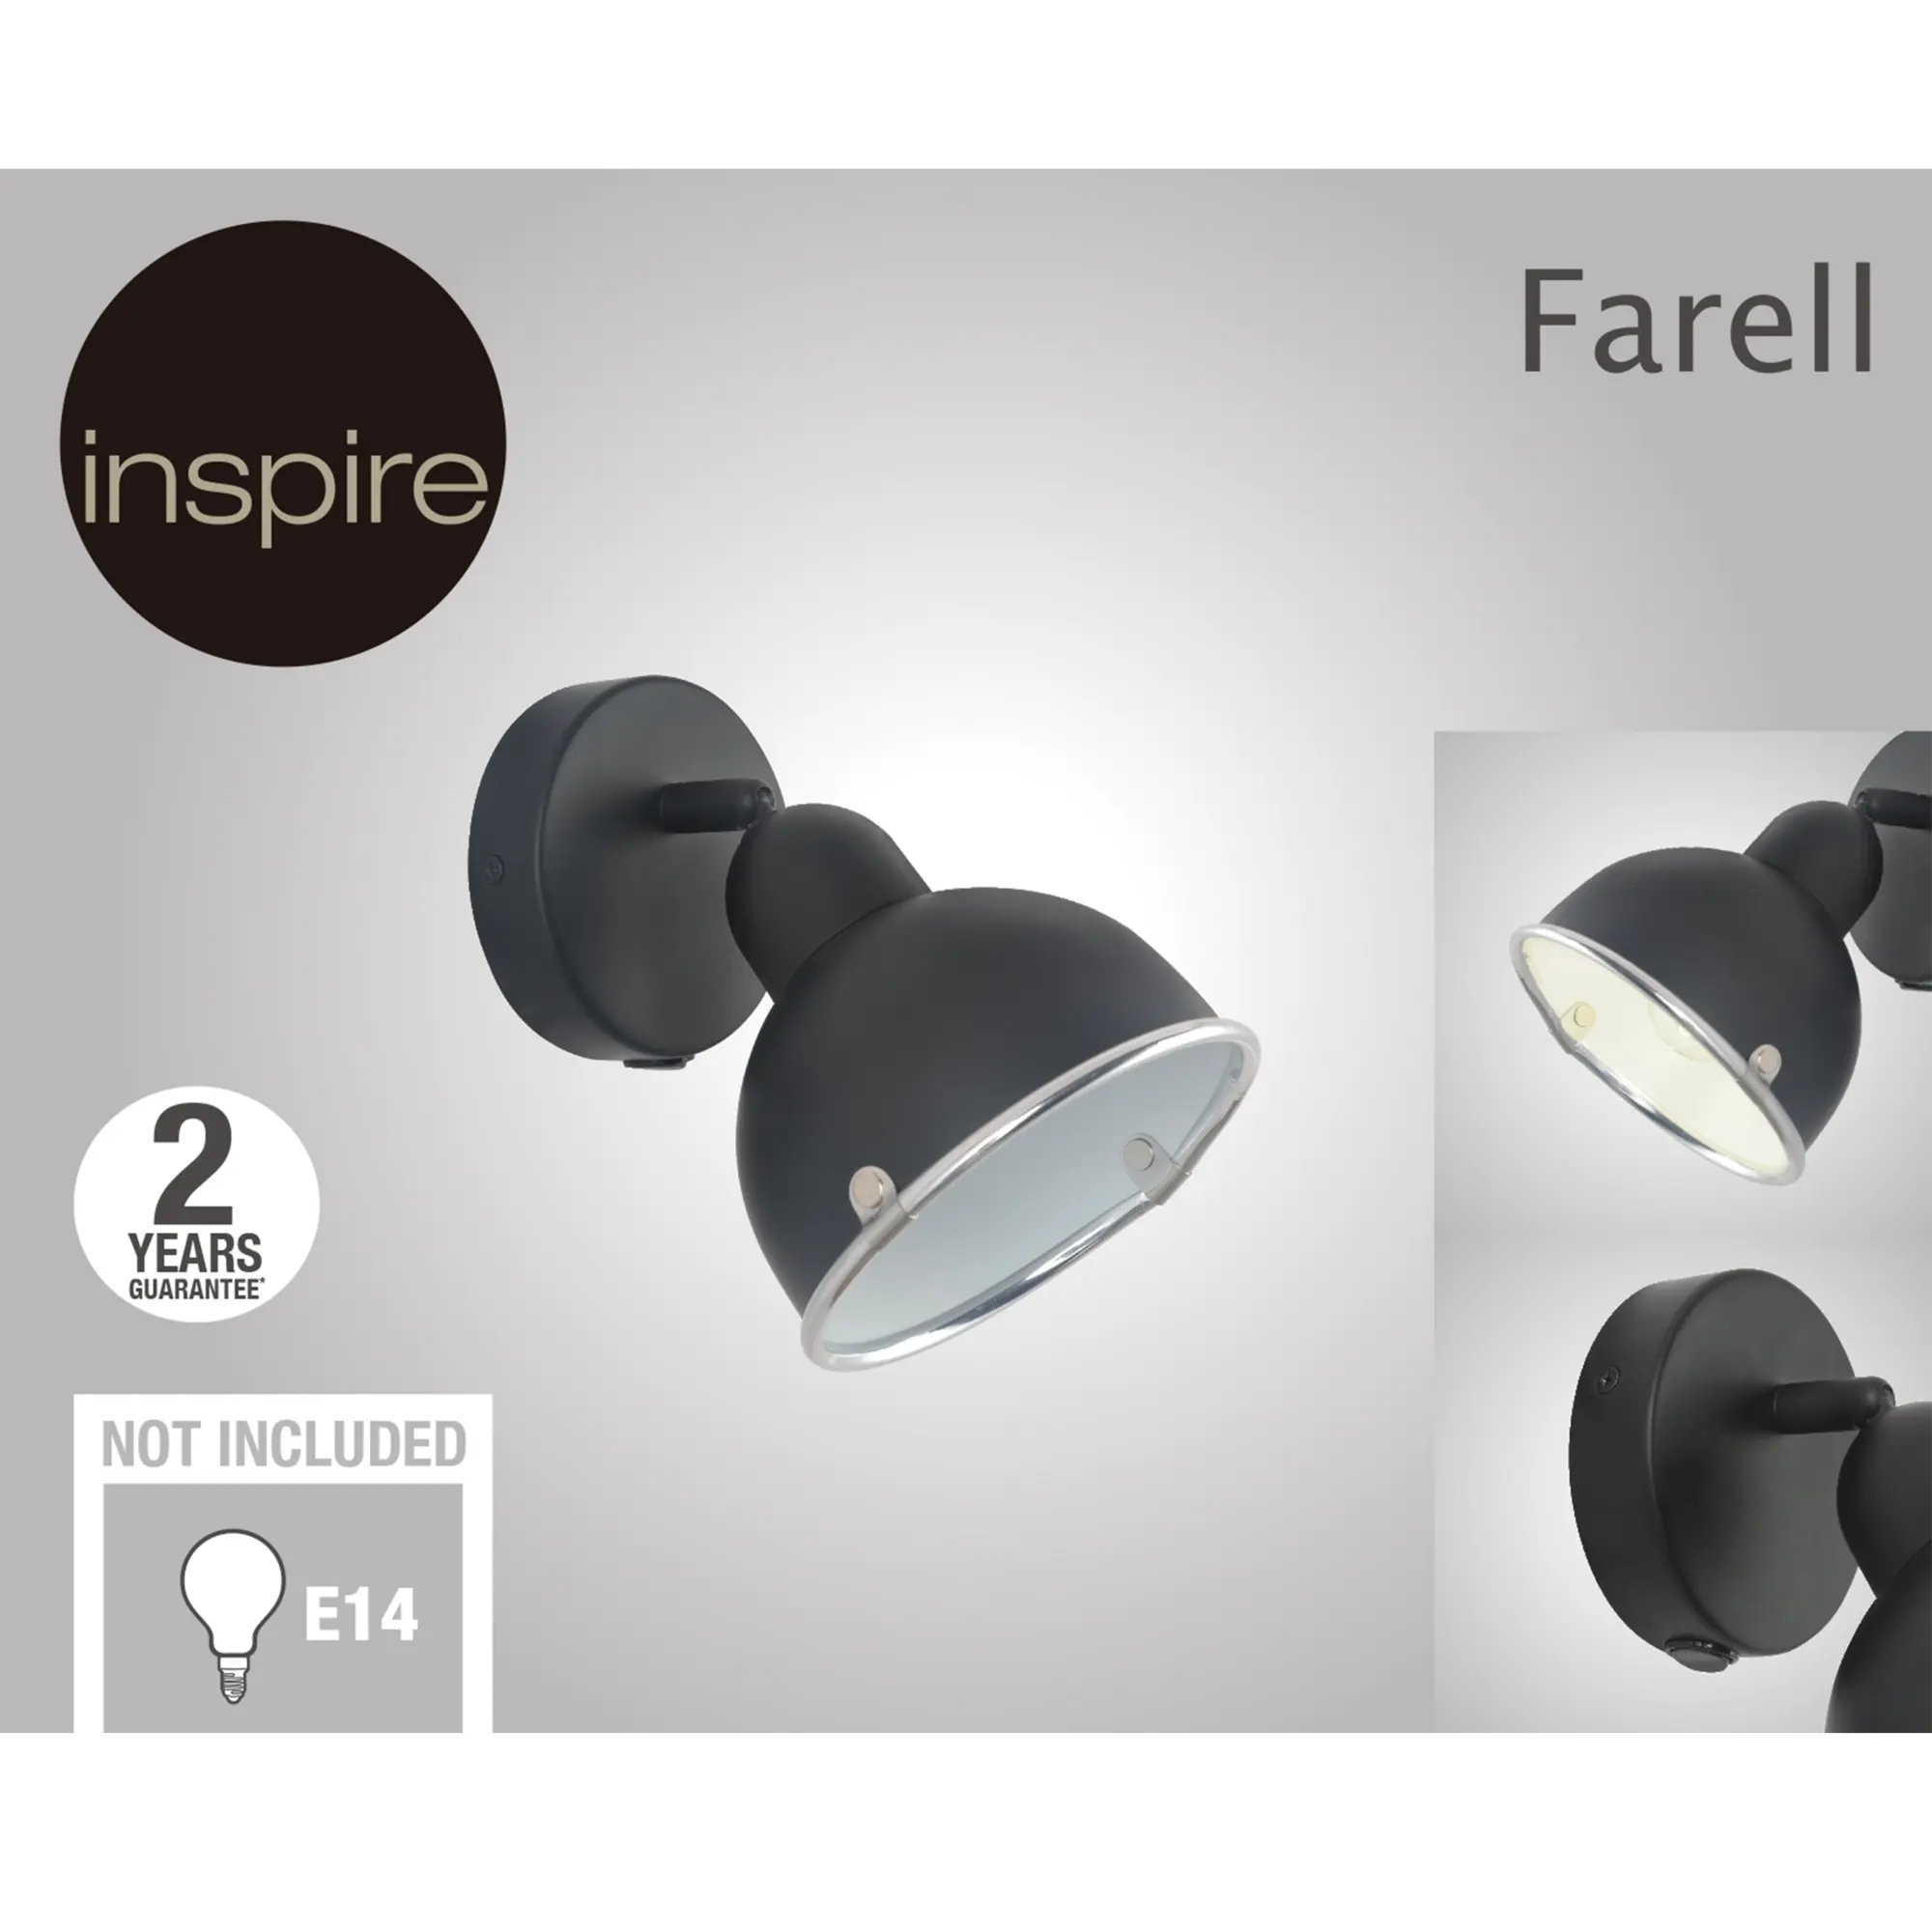 Faretto Farell nero in metallo E14 INSPIRE - 3